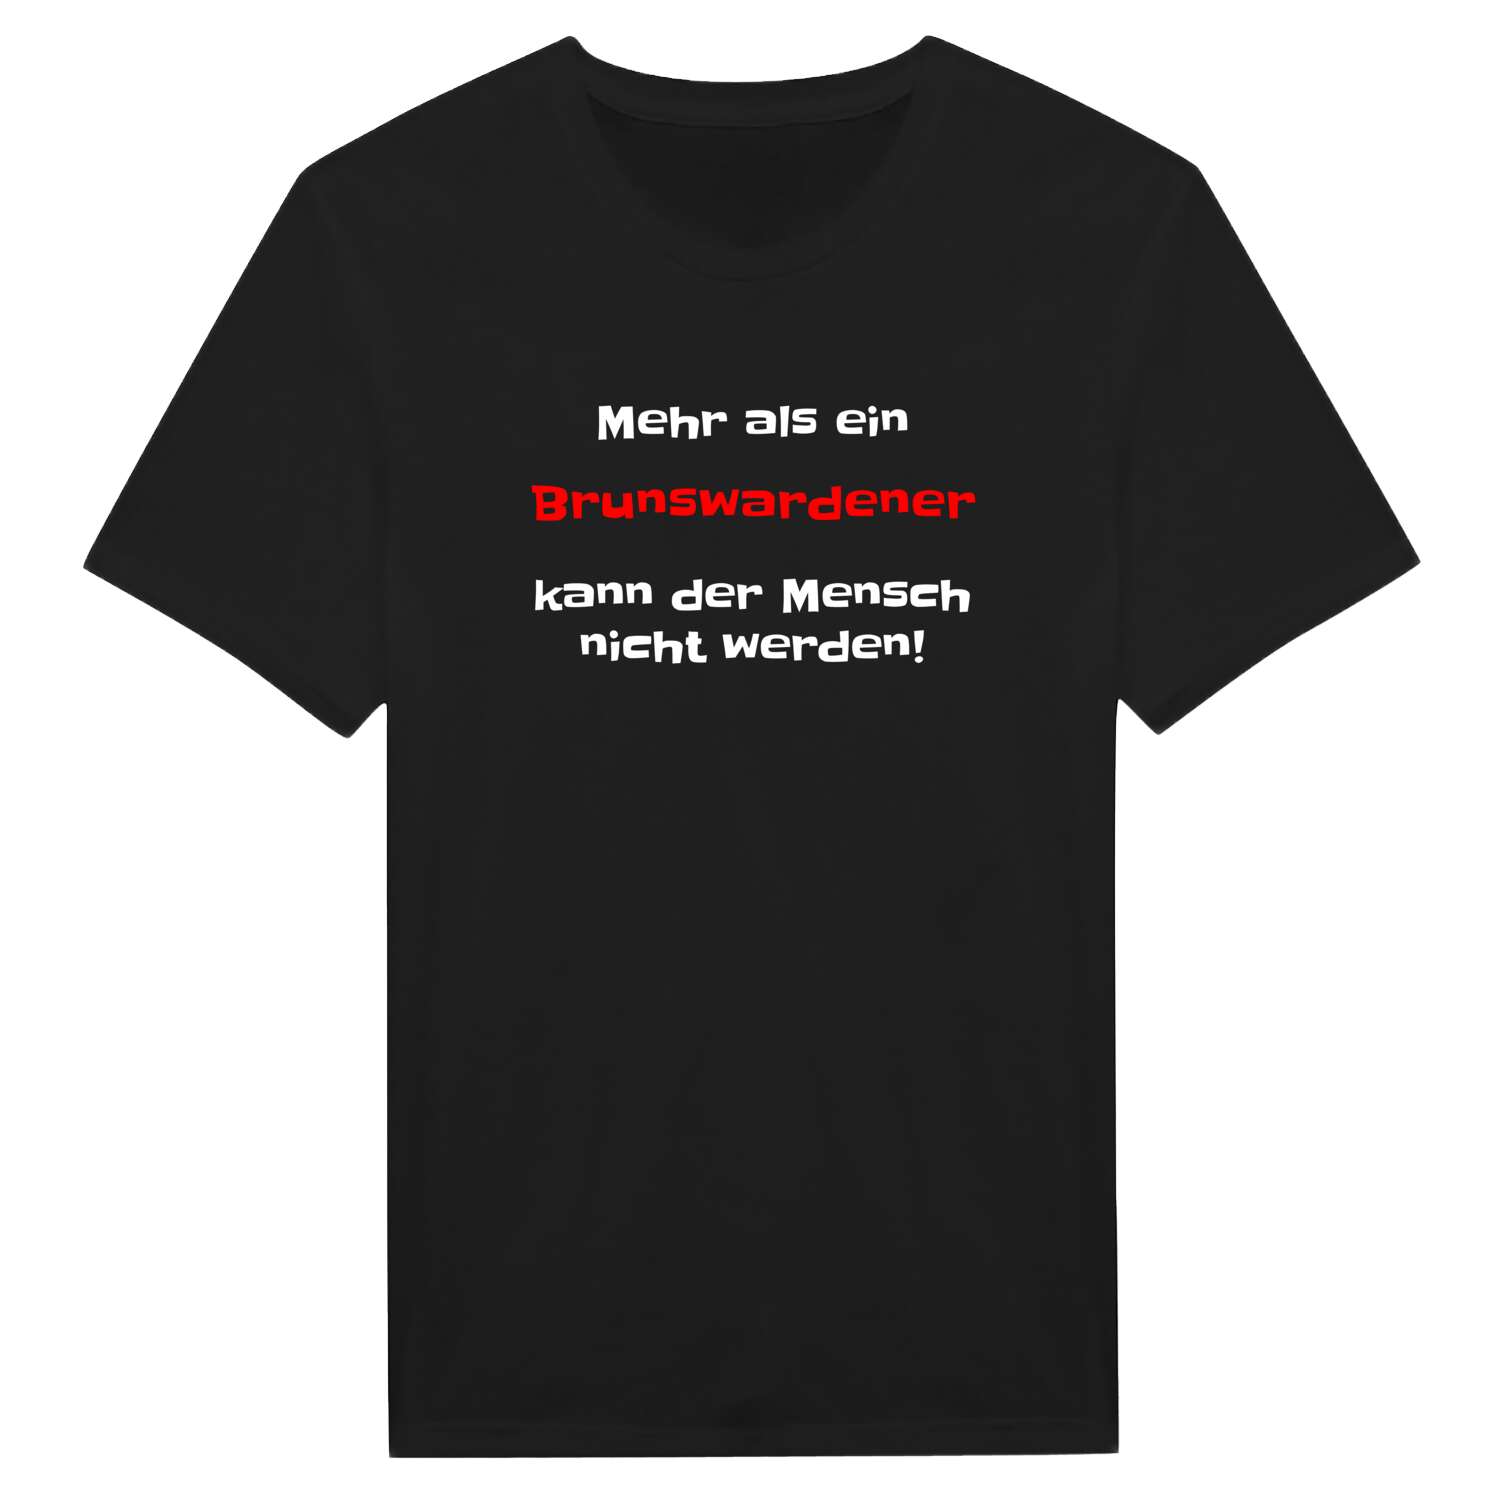 Brunswarden T-Shirt »Mehr als ein«